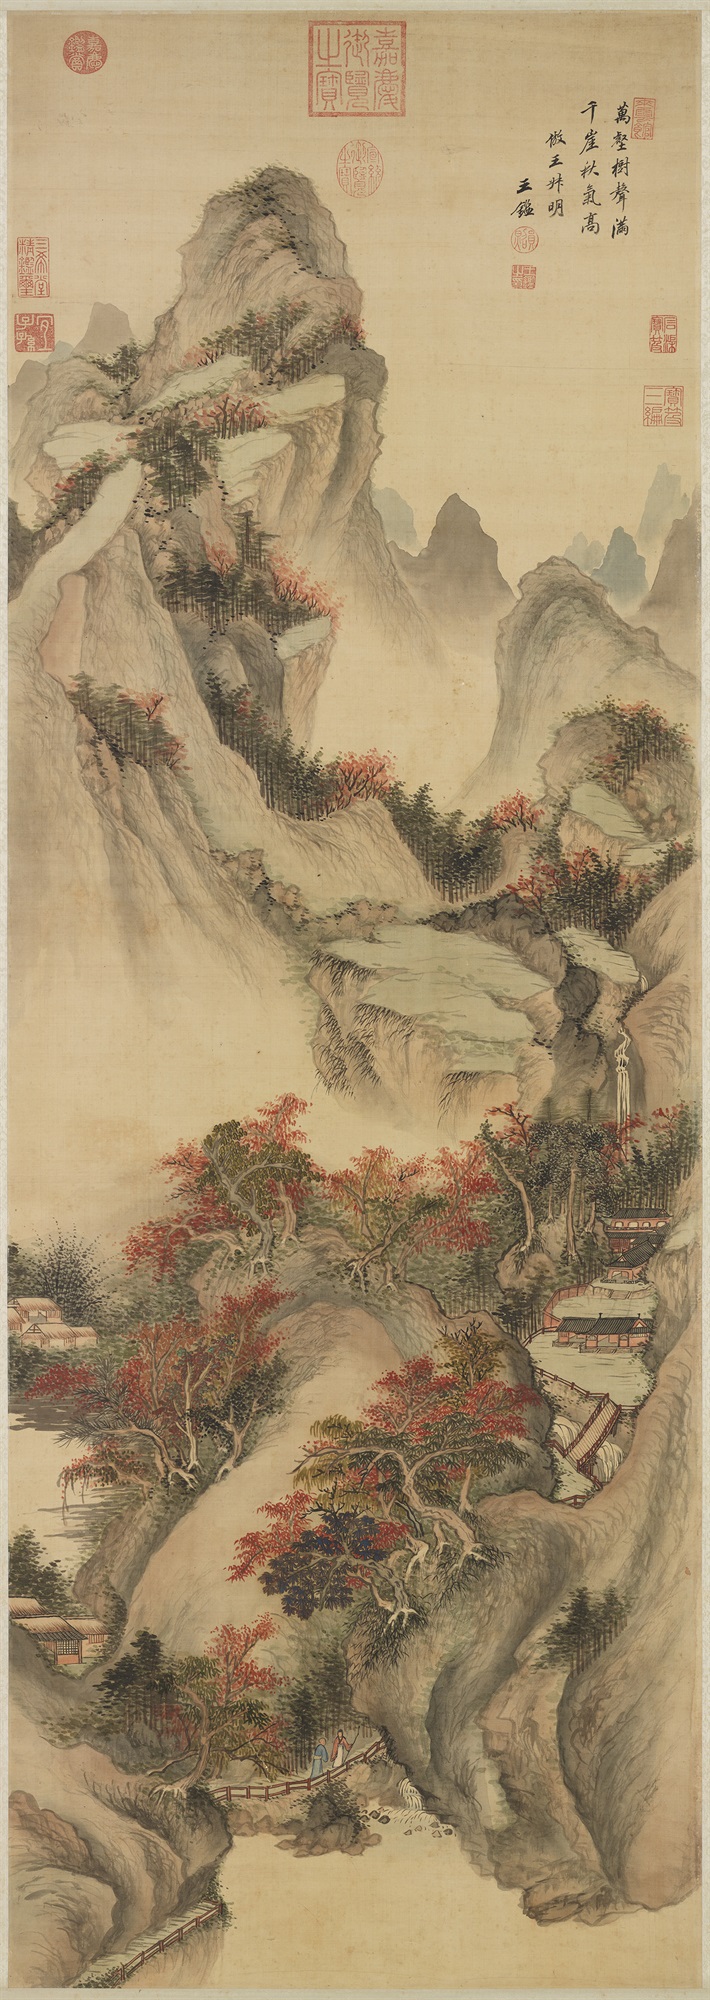 "Imitating Wang Meng’s “Autumn Mountains” Wang Jian (1598-1677), Qing dynasty"